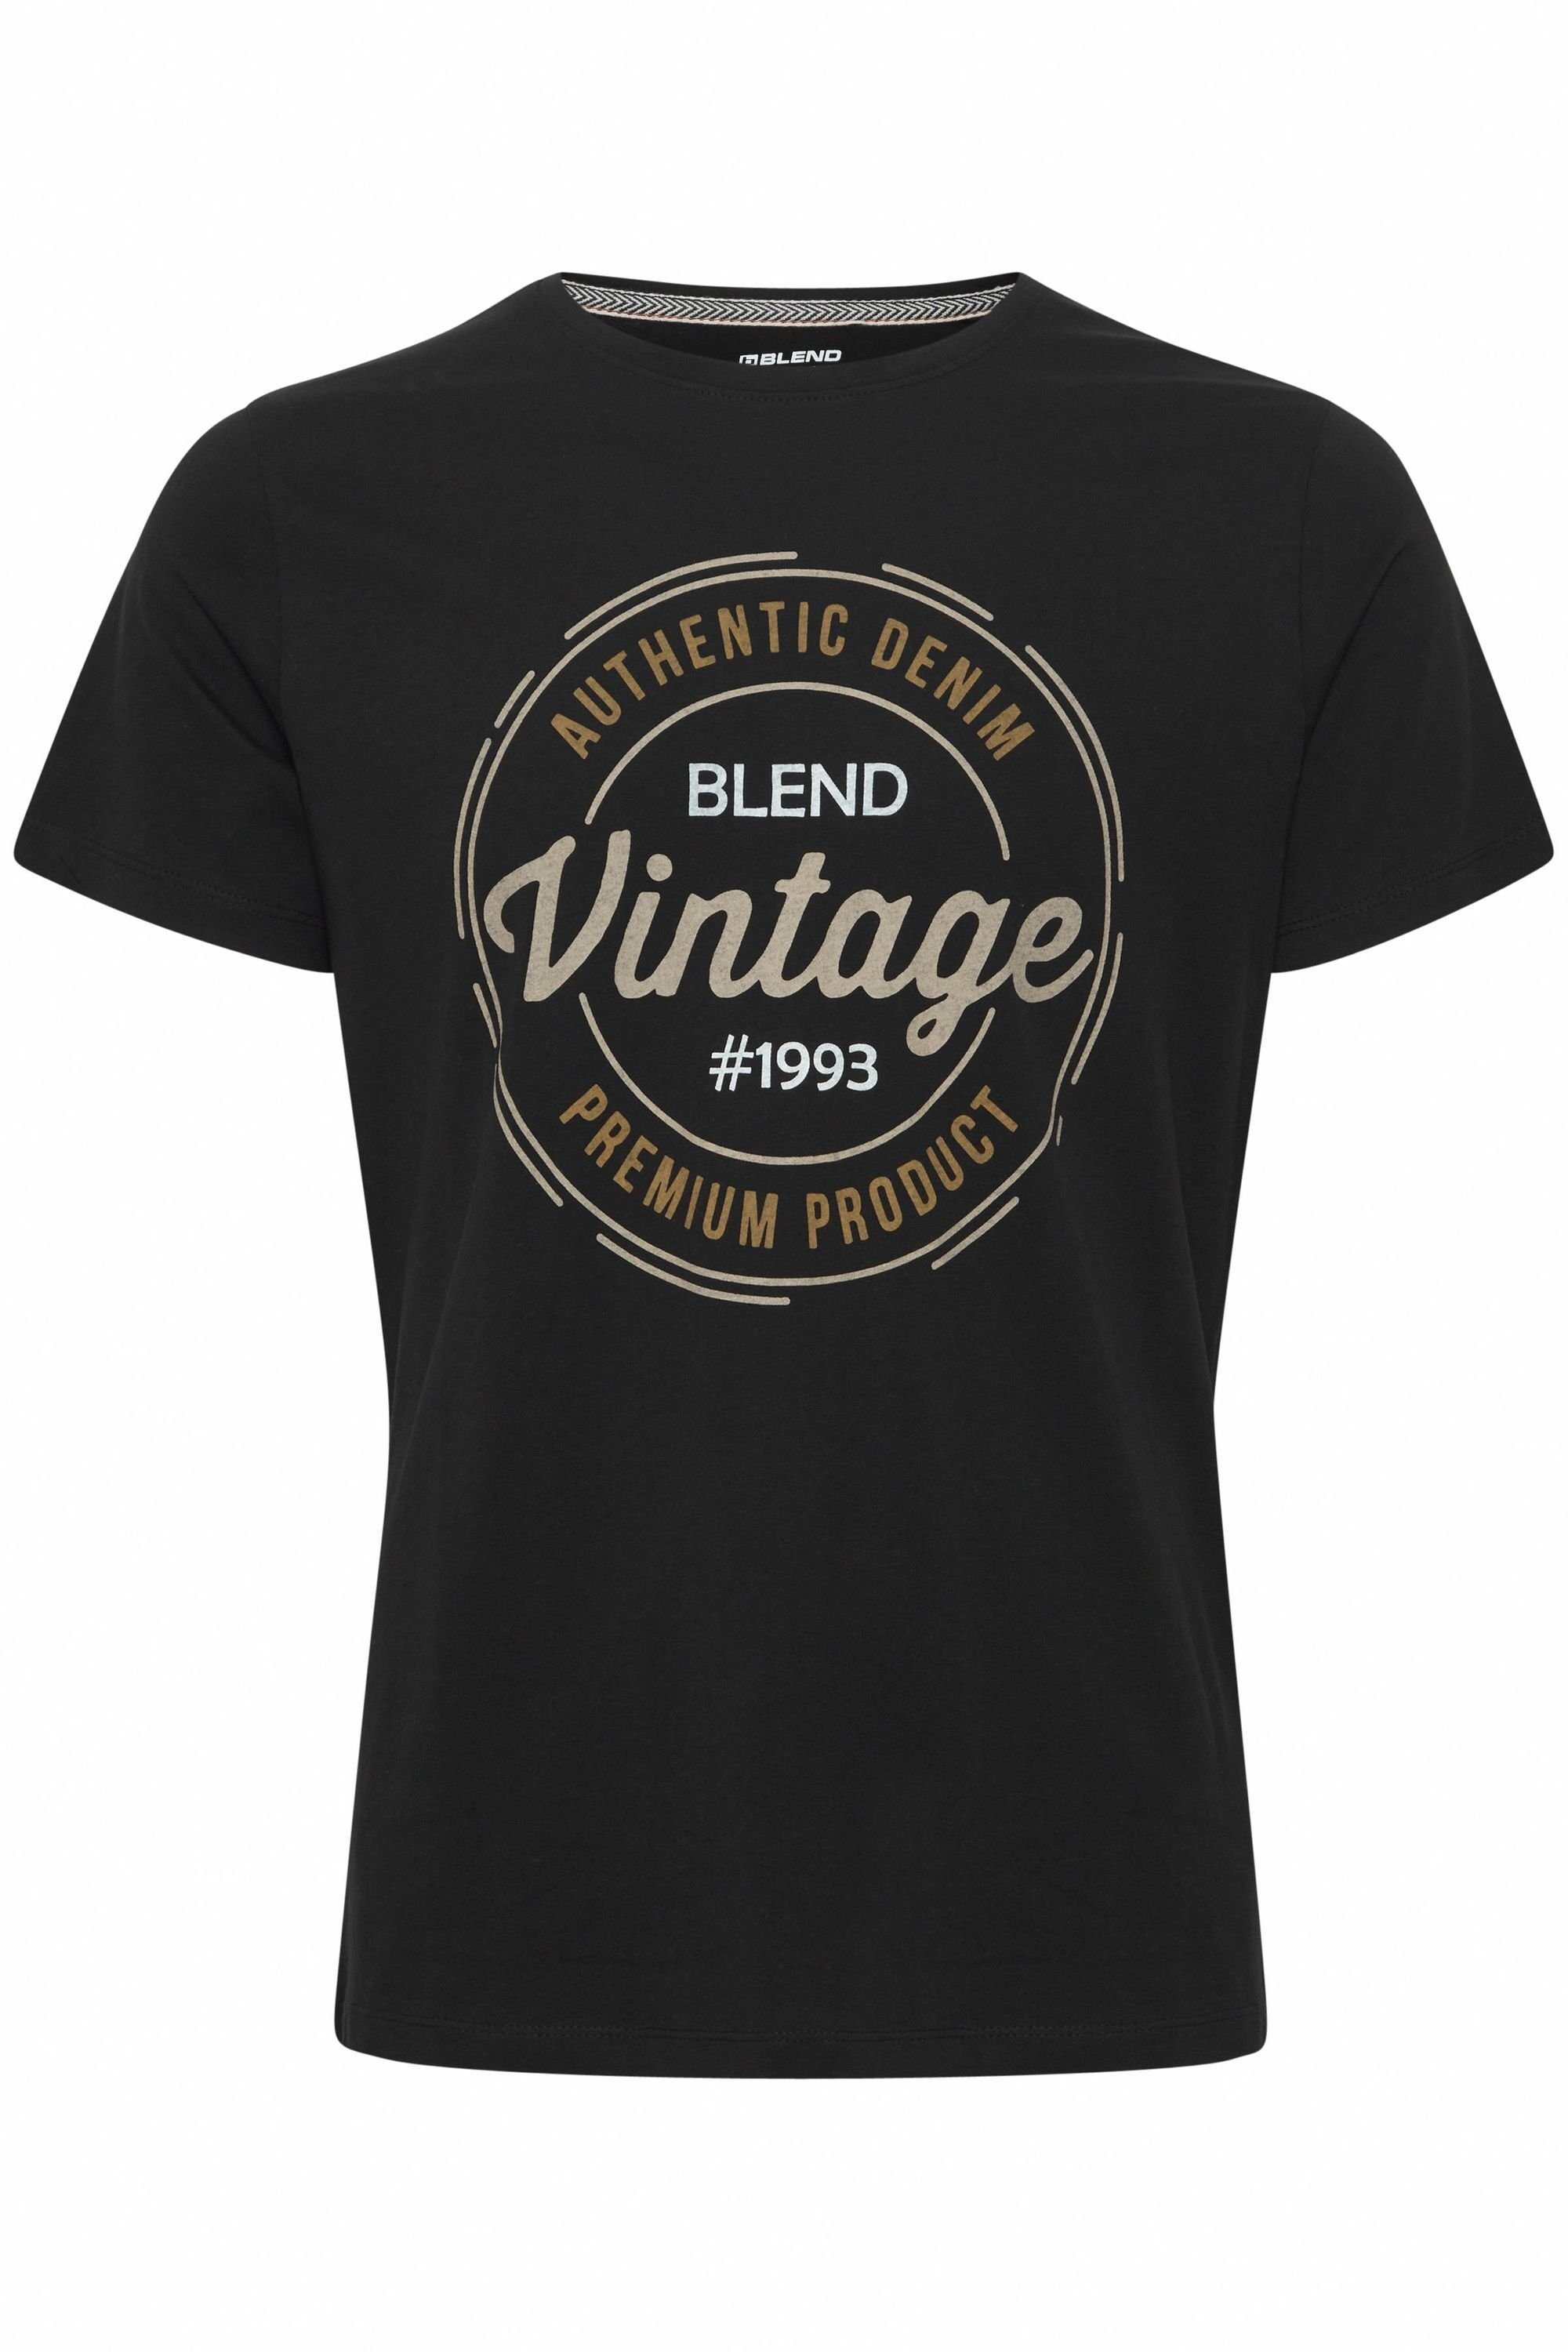 BLEND 20714811 Tee T-Shirt Black Blend